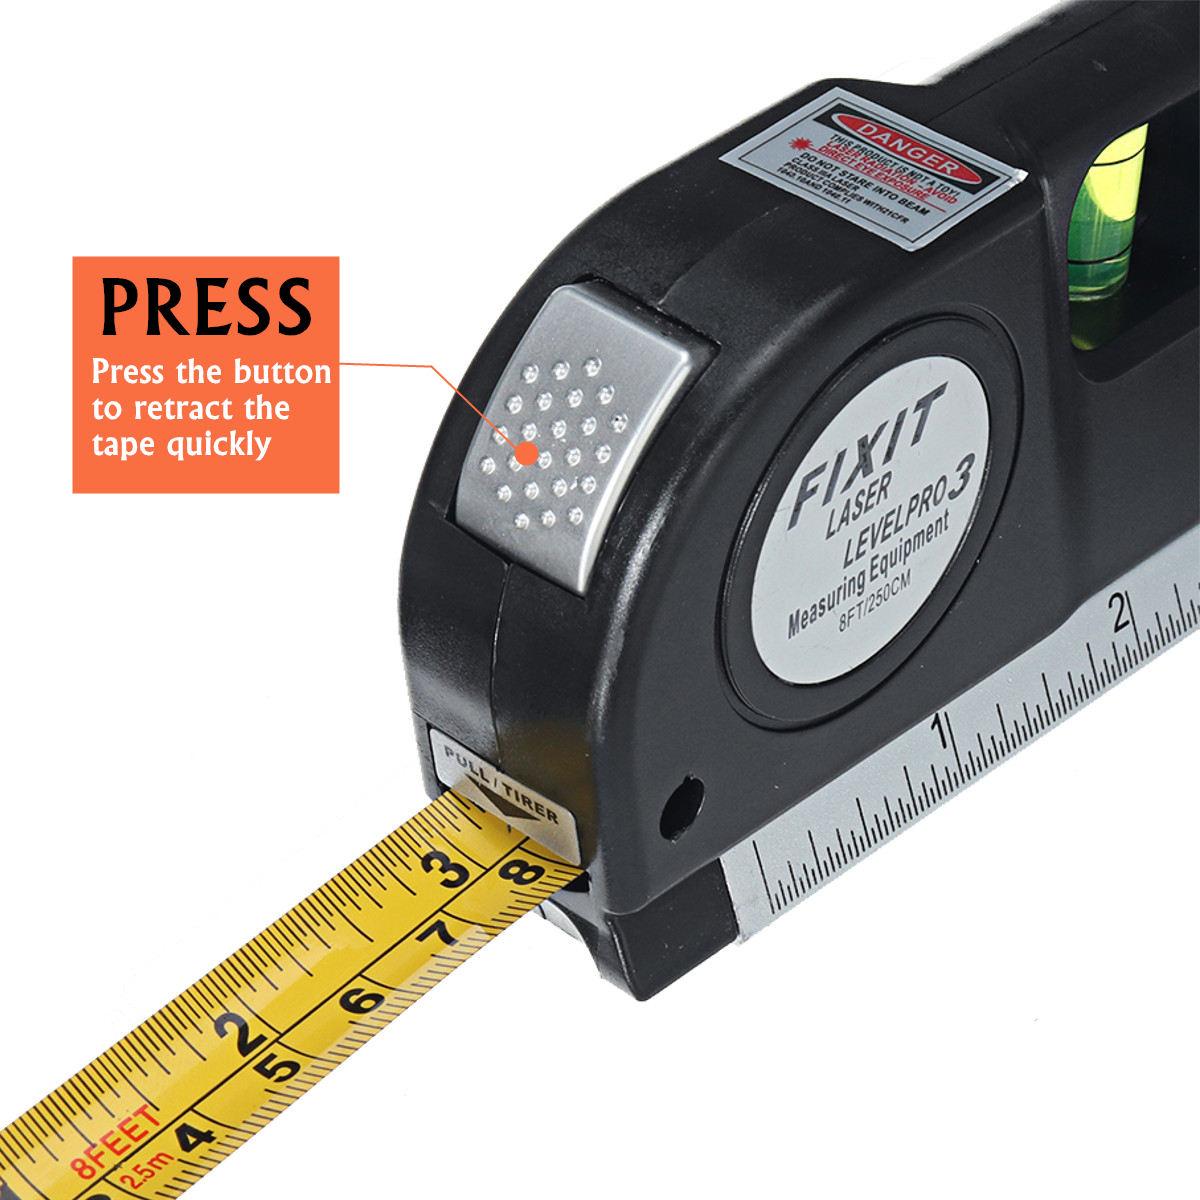 Multipurpose-Laser-Level-Vertical-Cross-Measuring-Tape-Aligner-Metric-Ruler-1628827-5